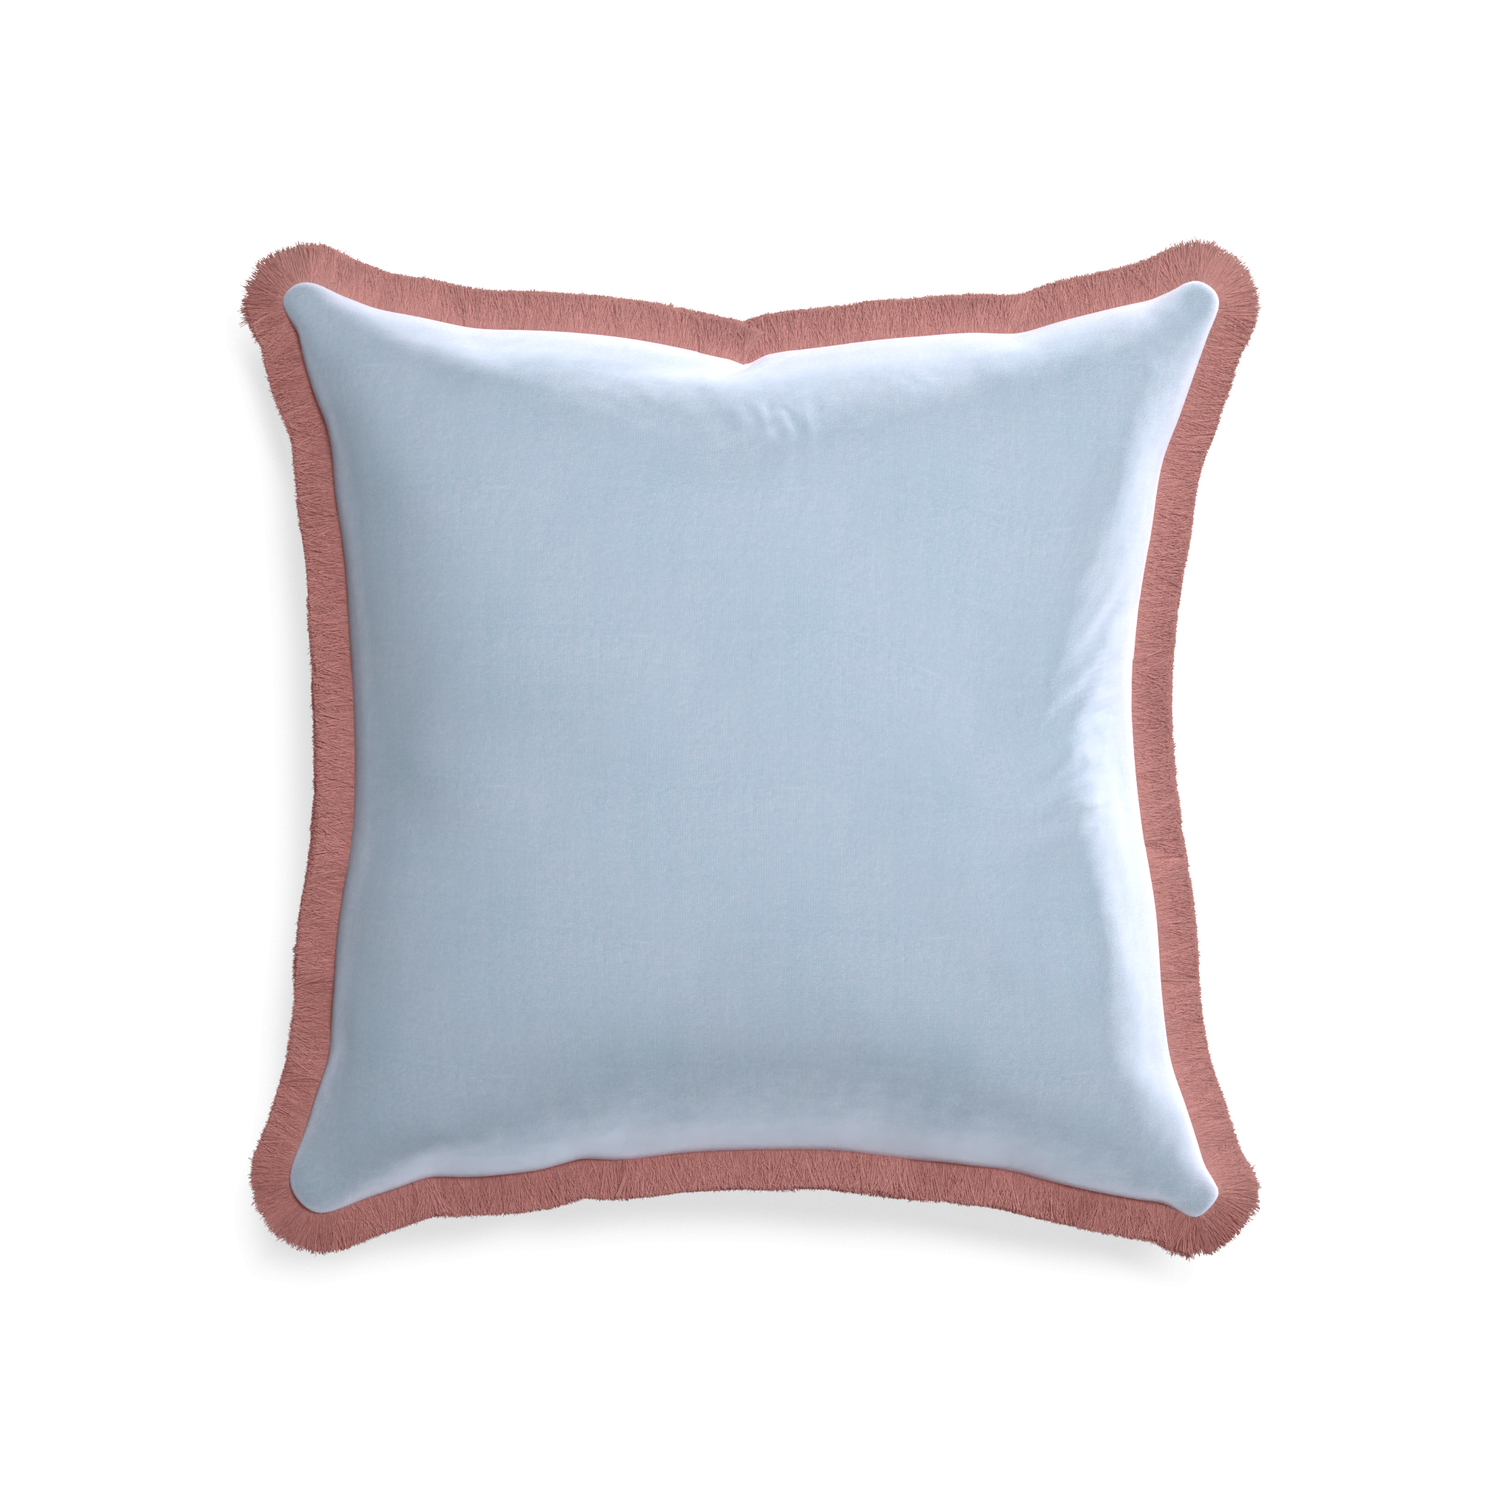 square light blue velvet pillow with dusty rose fringe